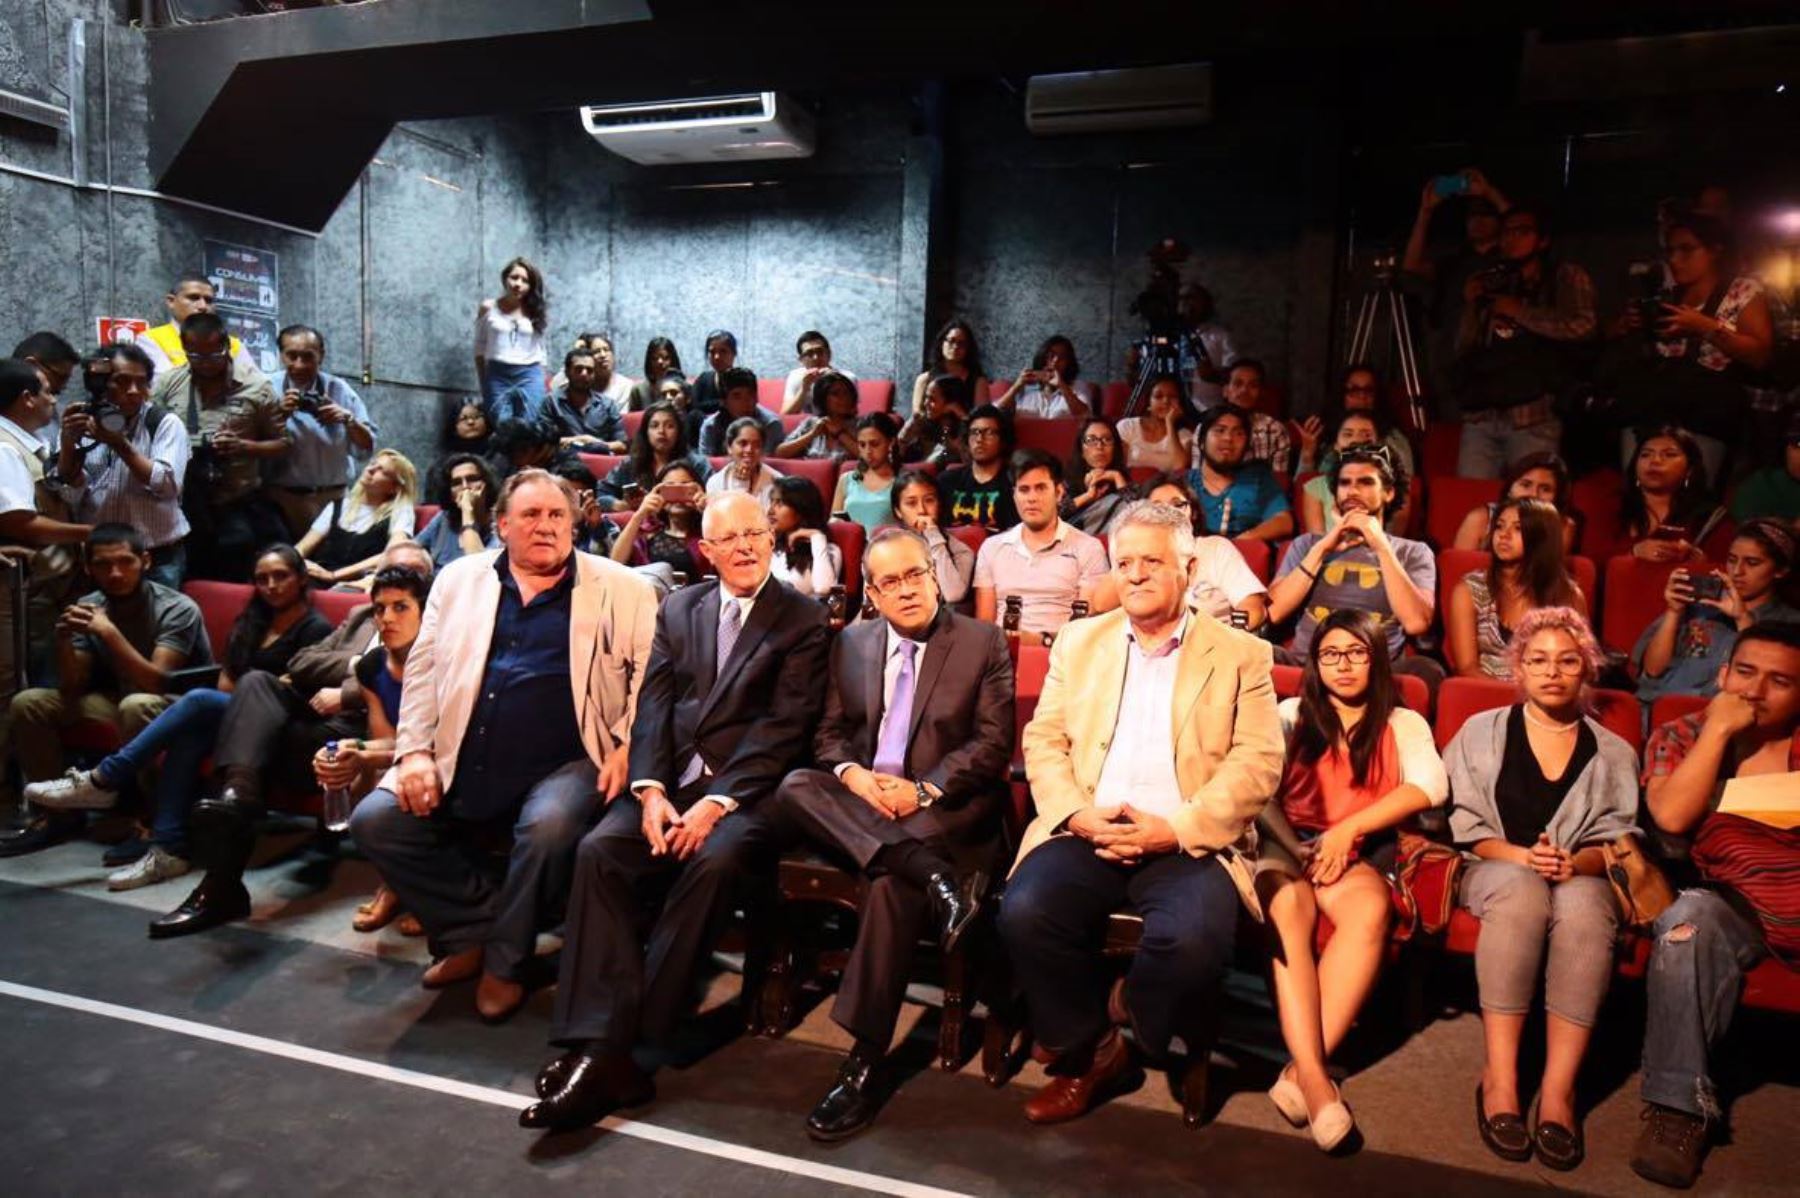 Presidente Pedro Pablo Kuczysnki participó en encuentro artístico junto a actor Gerard Depardieu.